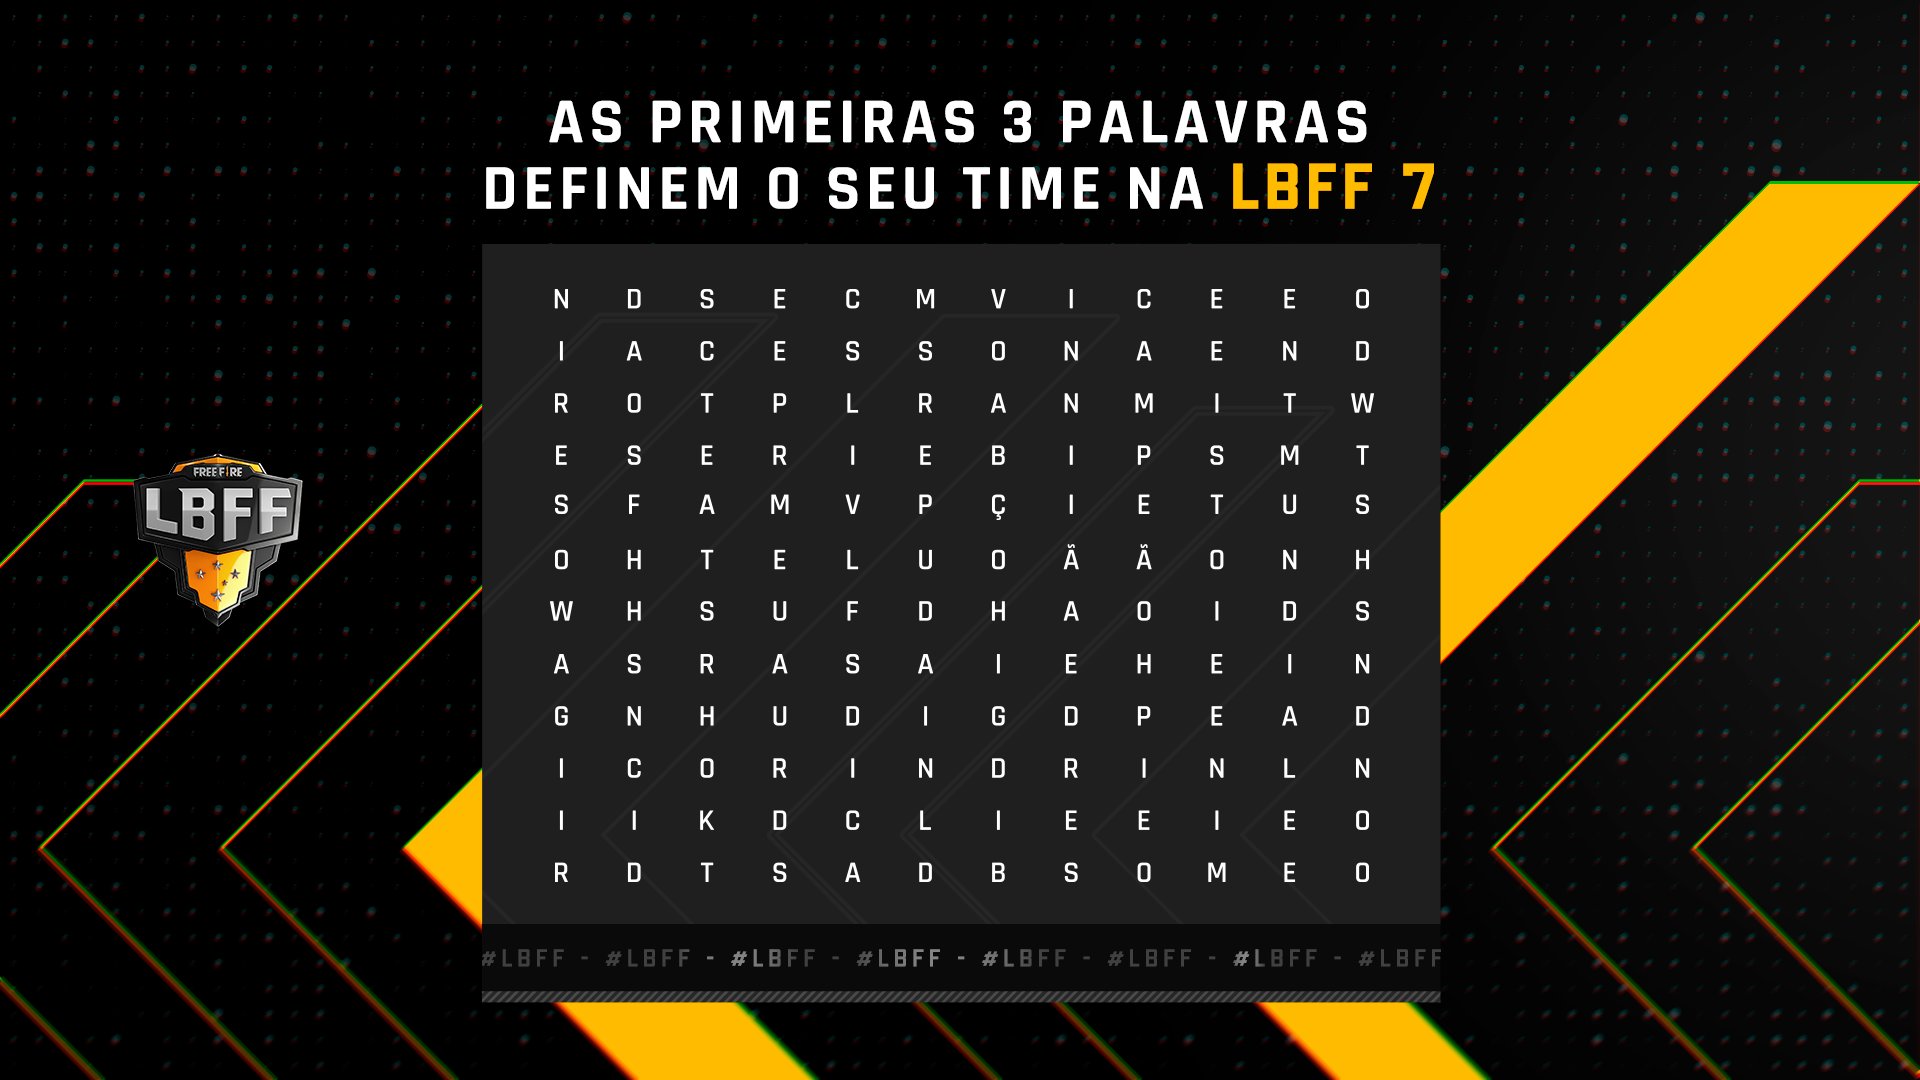 Free Fire Esports Brasil on X: Tô com vontade de fazer uma brincadeira  valendo CODIGUIN! 🥱 Bora jogar um caça-palavras da #LBFF, minha tropa?  Quero ver quem é que consegue achar todas